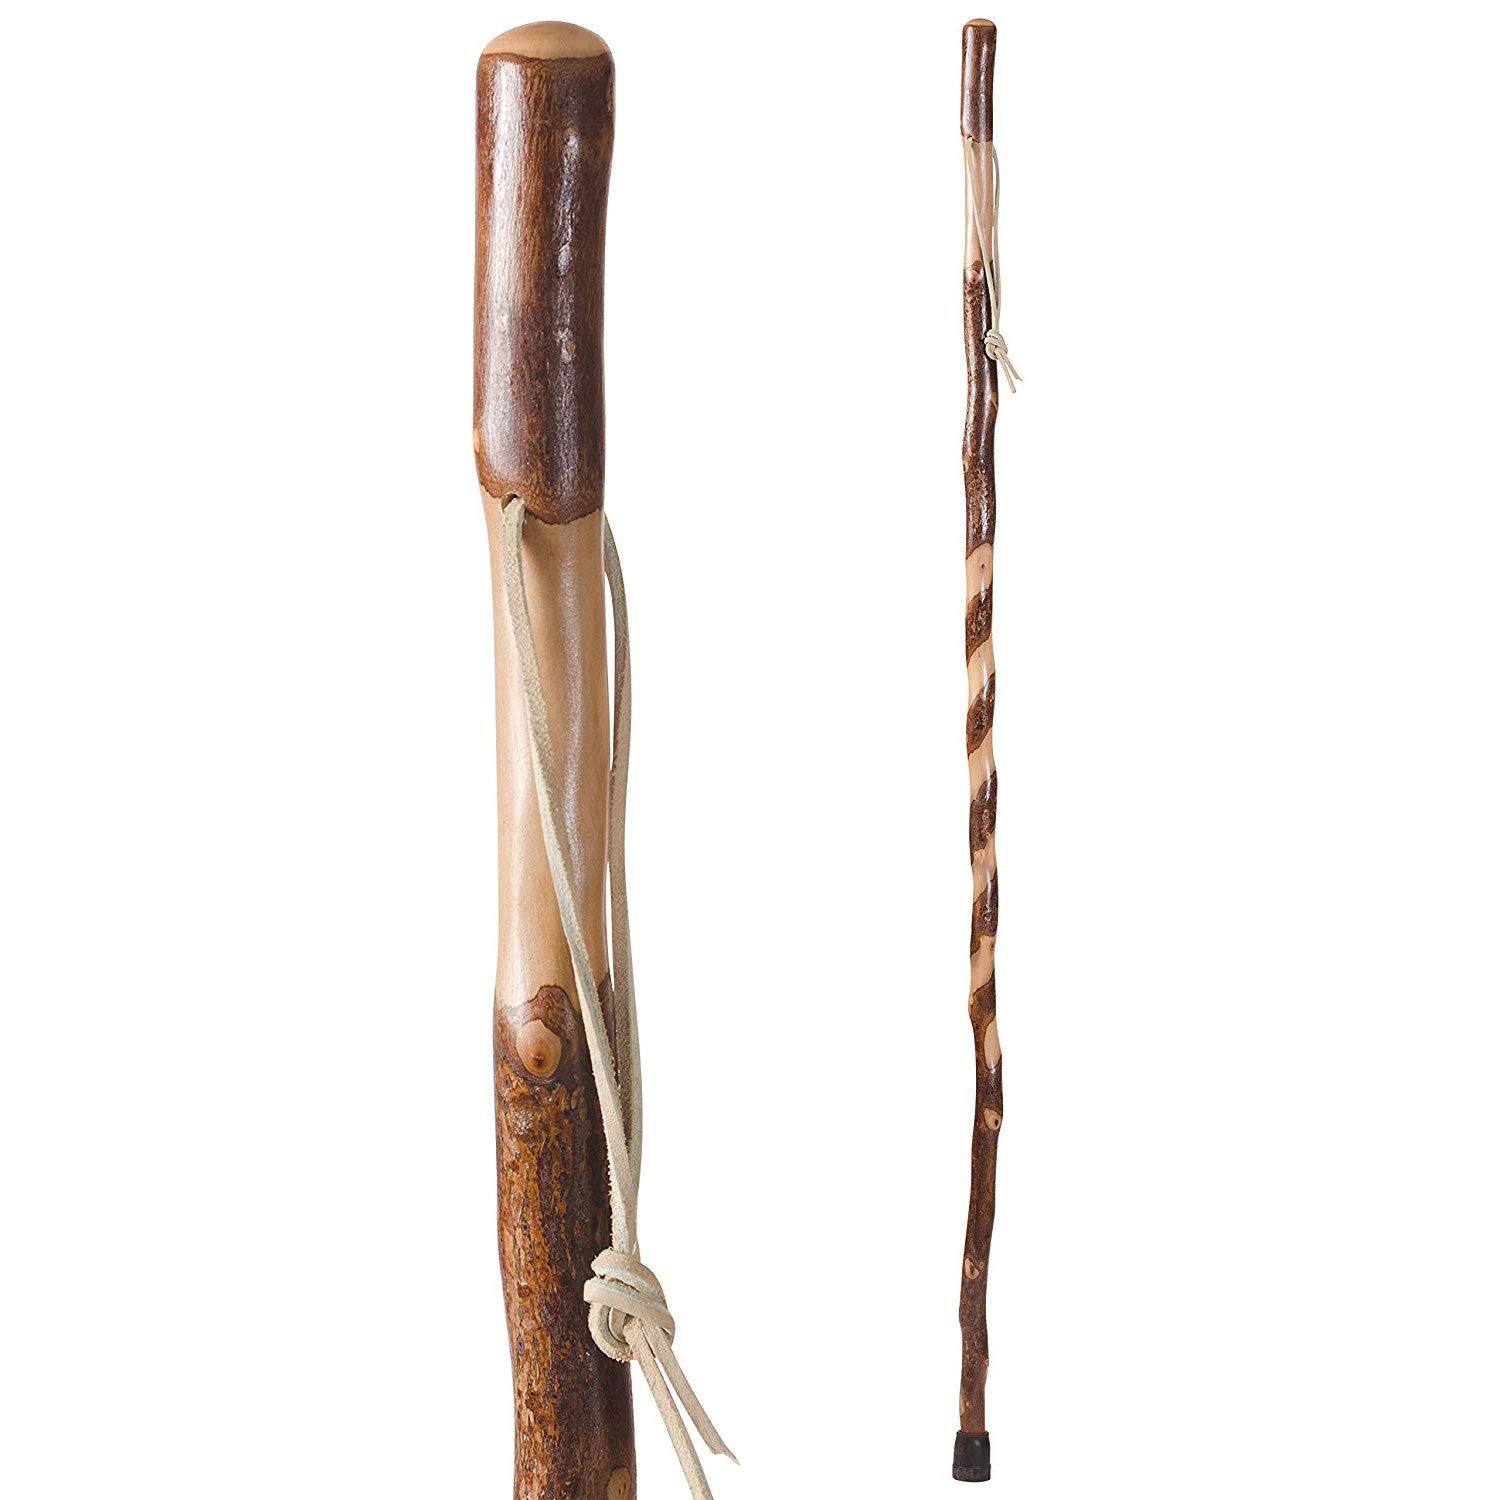 送料無料Hiking Walking Trekking Stick - Handcrafted Wooden Walking Hiking Stick - Made in the USA by Brazos - Twisted S